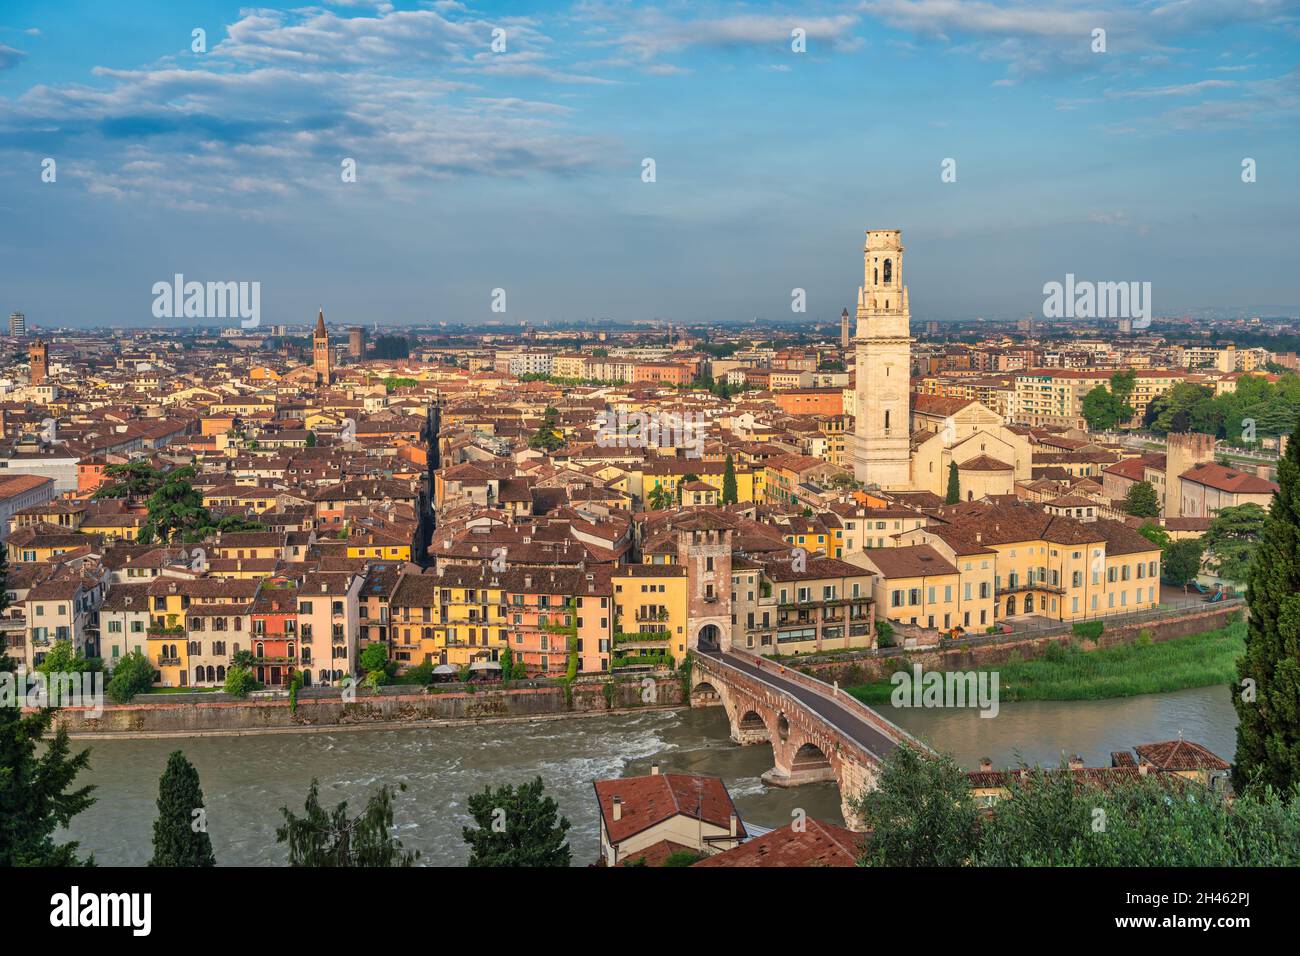 Vérone Italie, vue panoramique sur la ville à l'Adige et la cathédrale de Vérone Banque D'Images